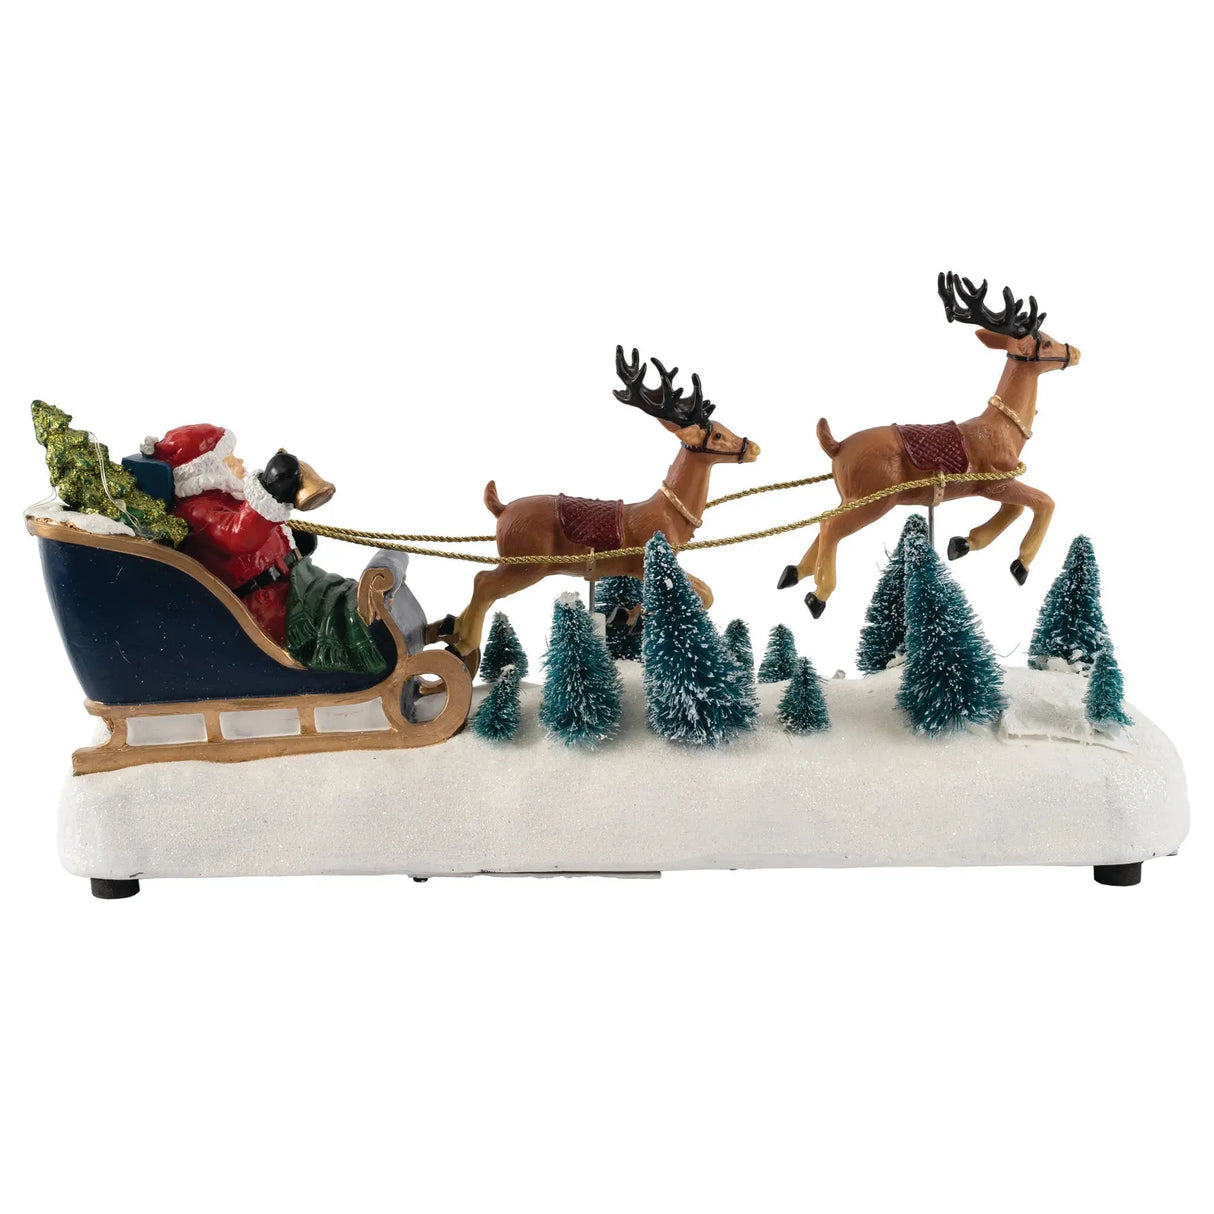 Santa in Sleigh with Reindeer